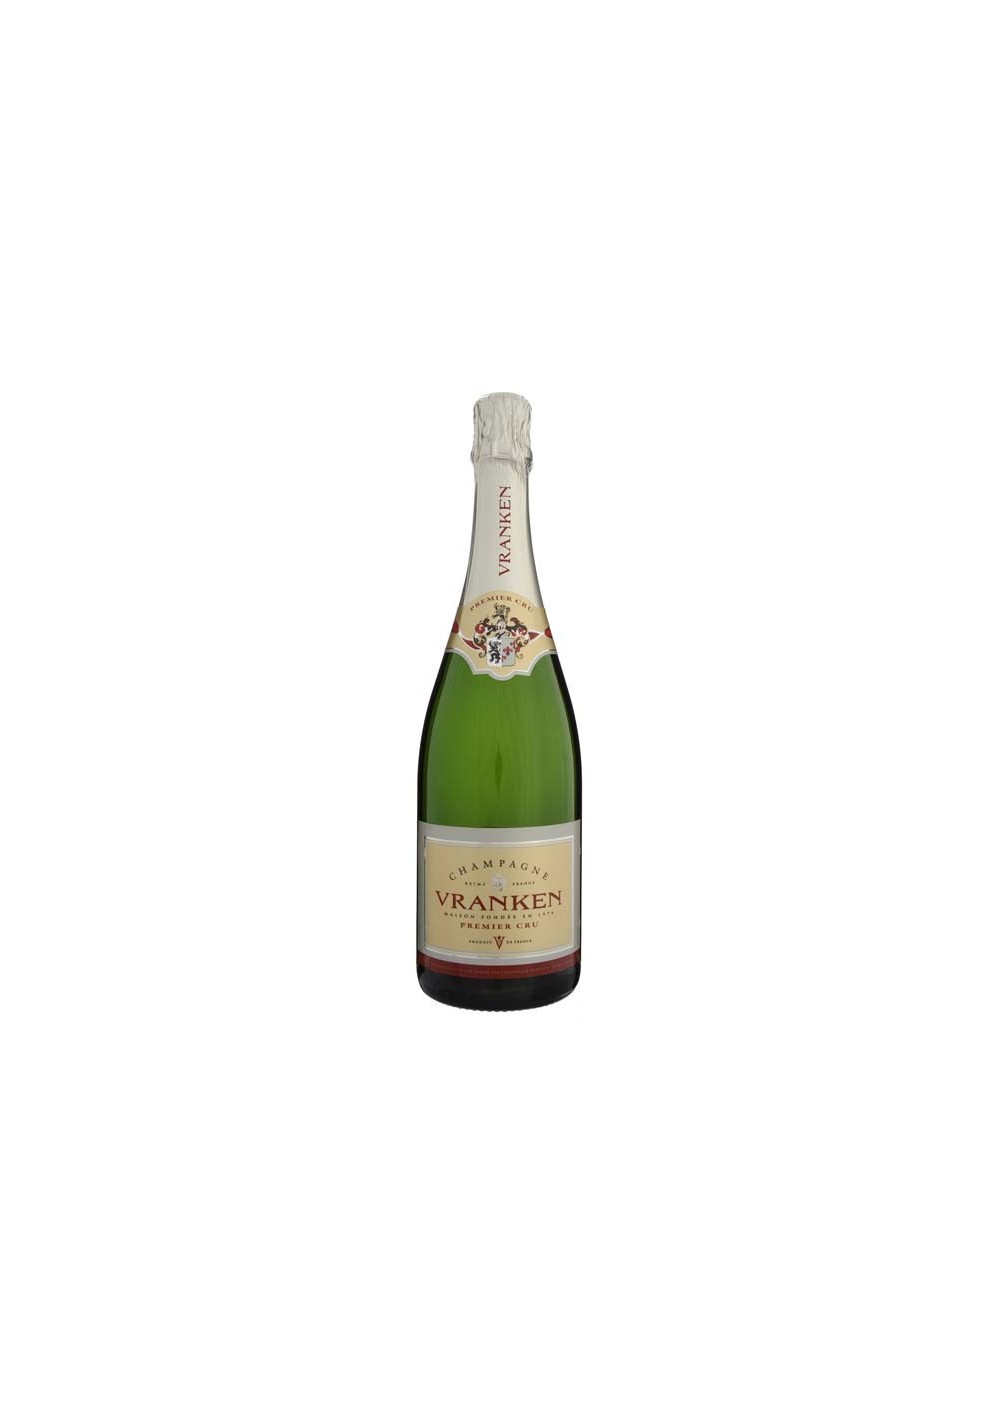 Exclusief kopiëren Let op Concurrerende prijzen | Champagne Vranken | geleverd 14H | Brussel, België